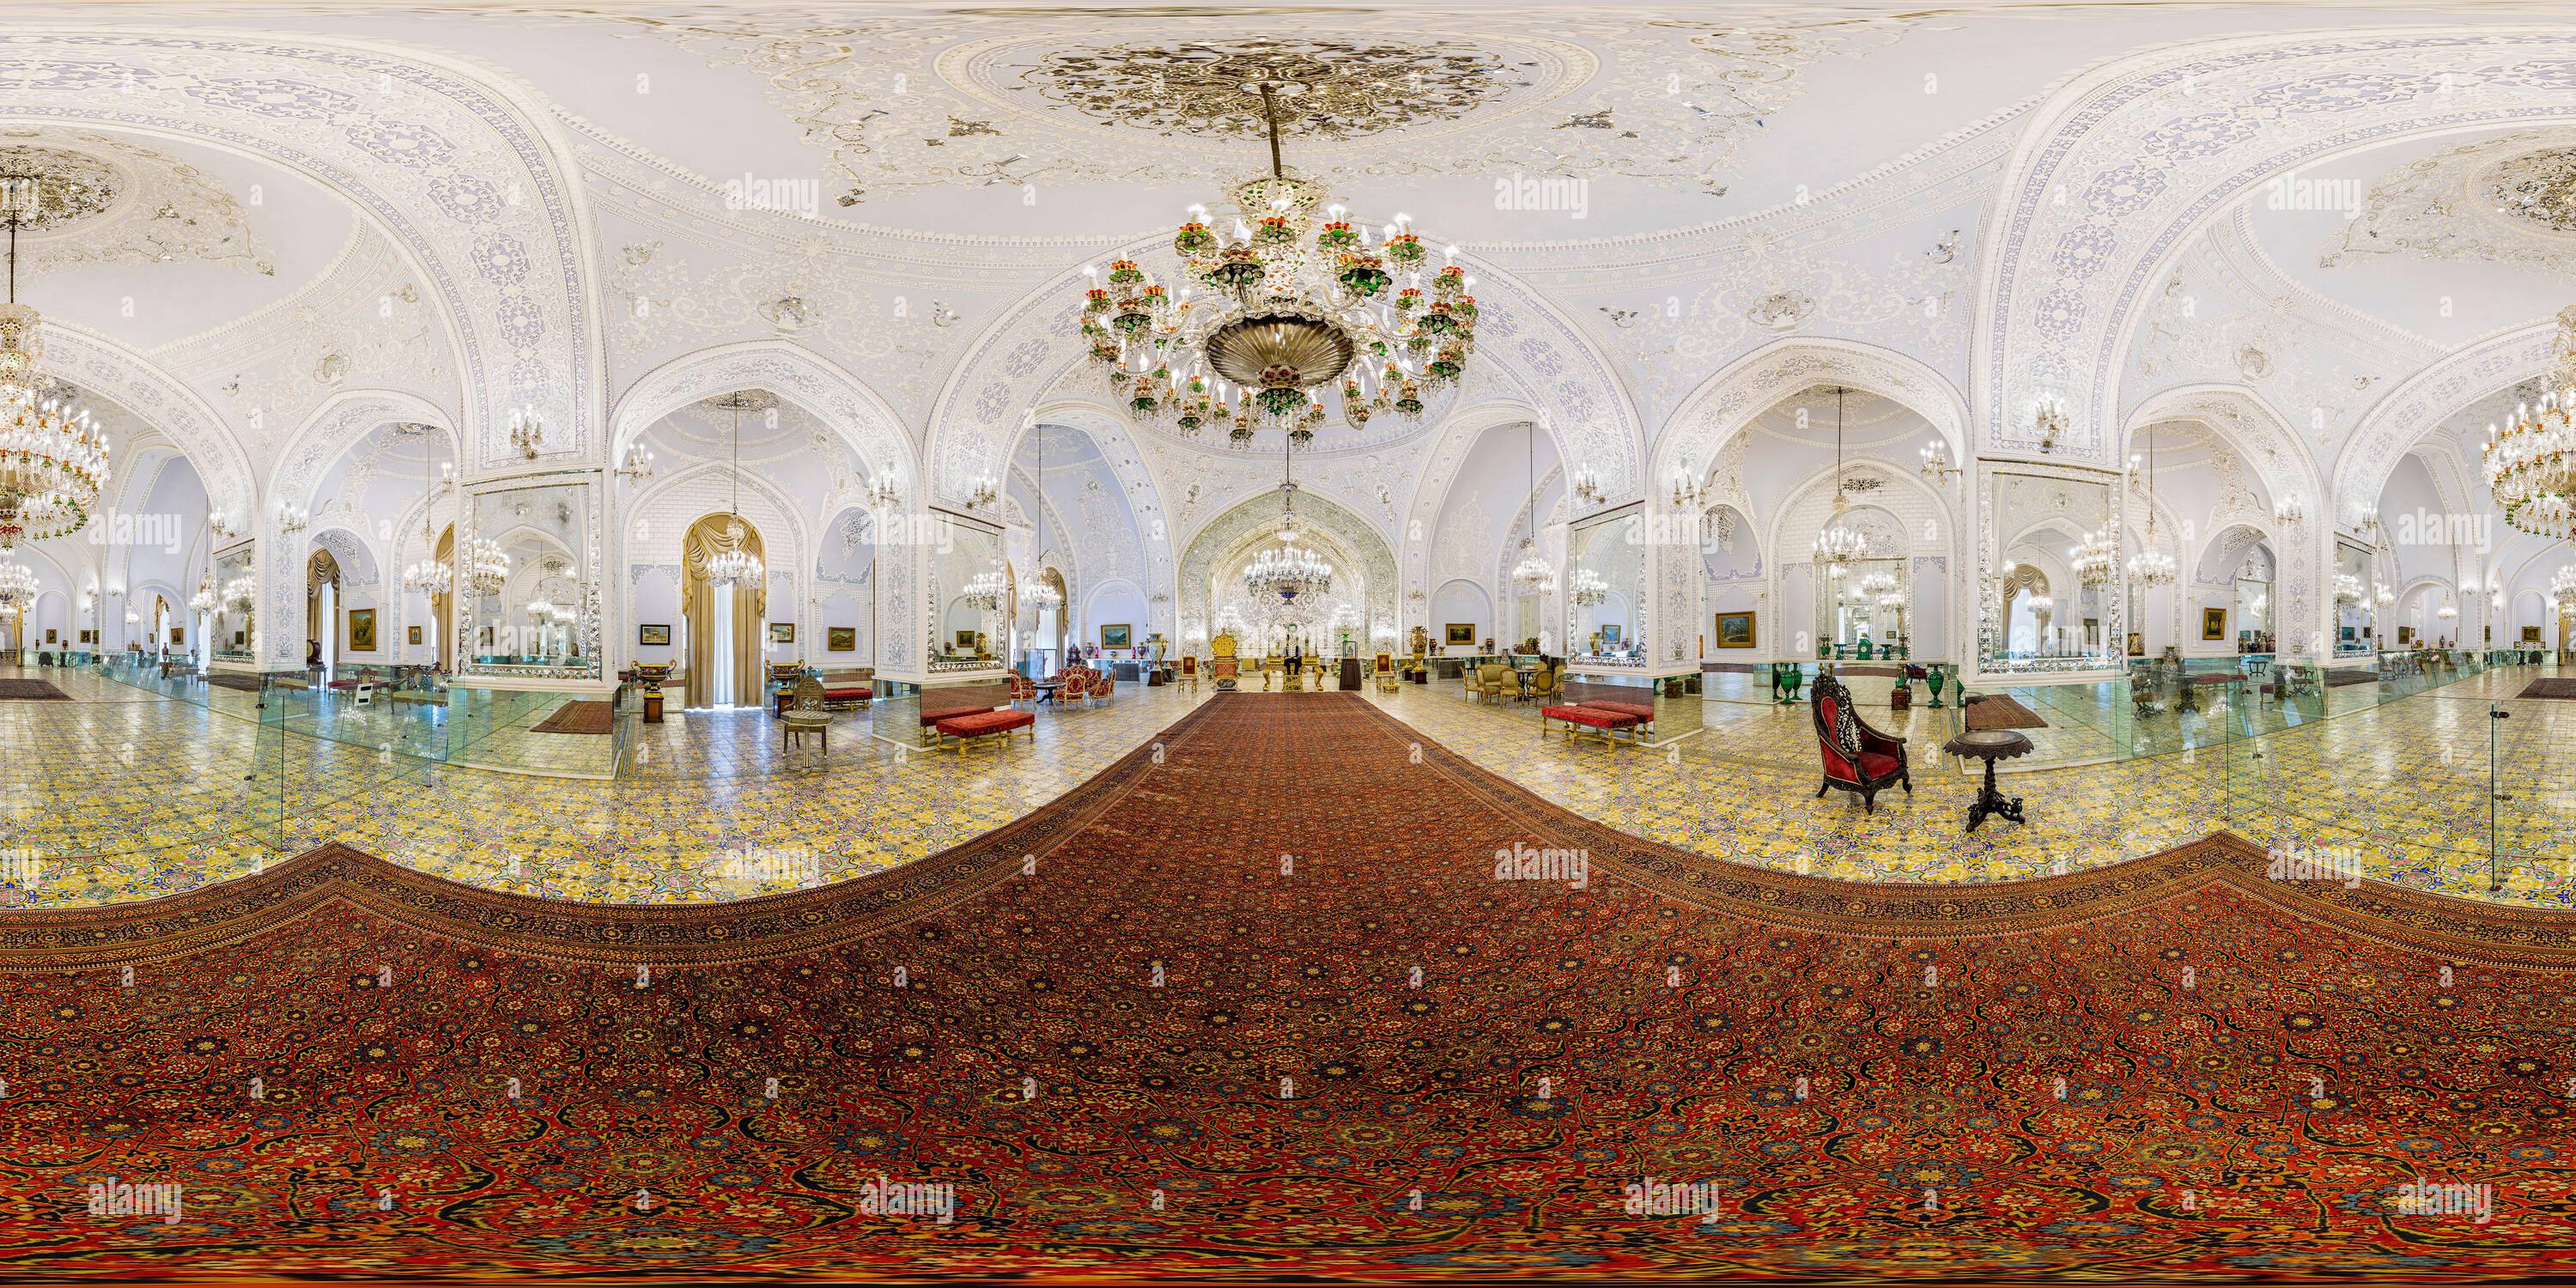 Visualizzazione panoramica a 360 gradi di Palazzo Golestan , Patrimonio Mondiale dell'Umanita'